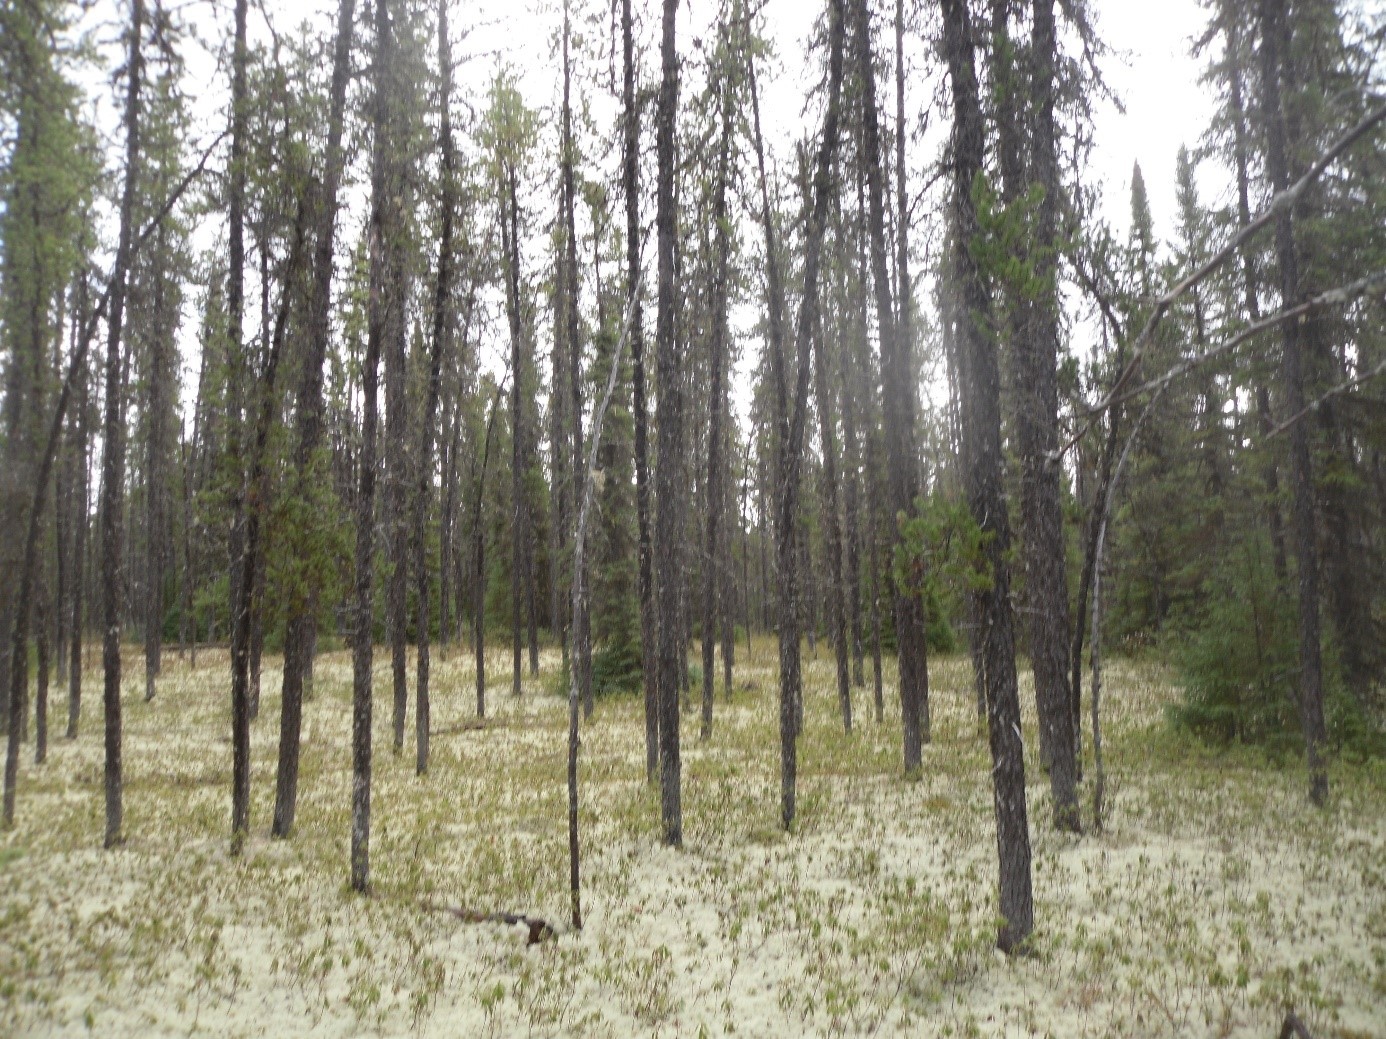 Forêt boréale équienne, où se mélange ici épinette noire et pin gris. La structure de la forêt est très simple, avec des arbres de même taille